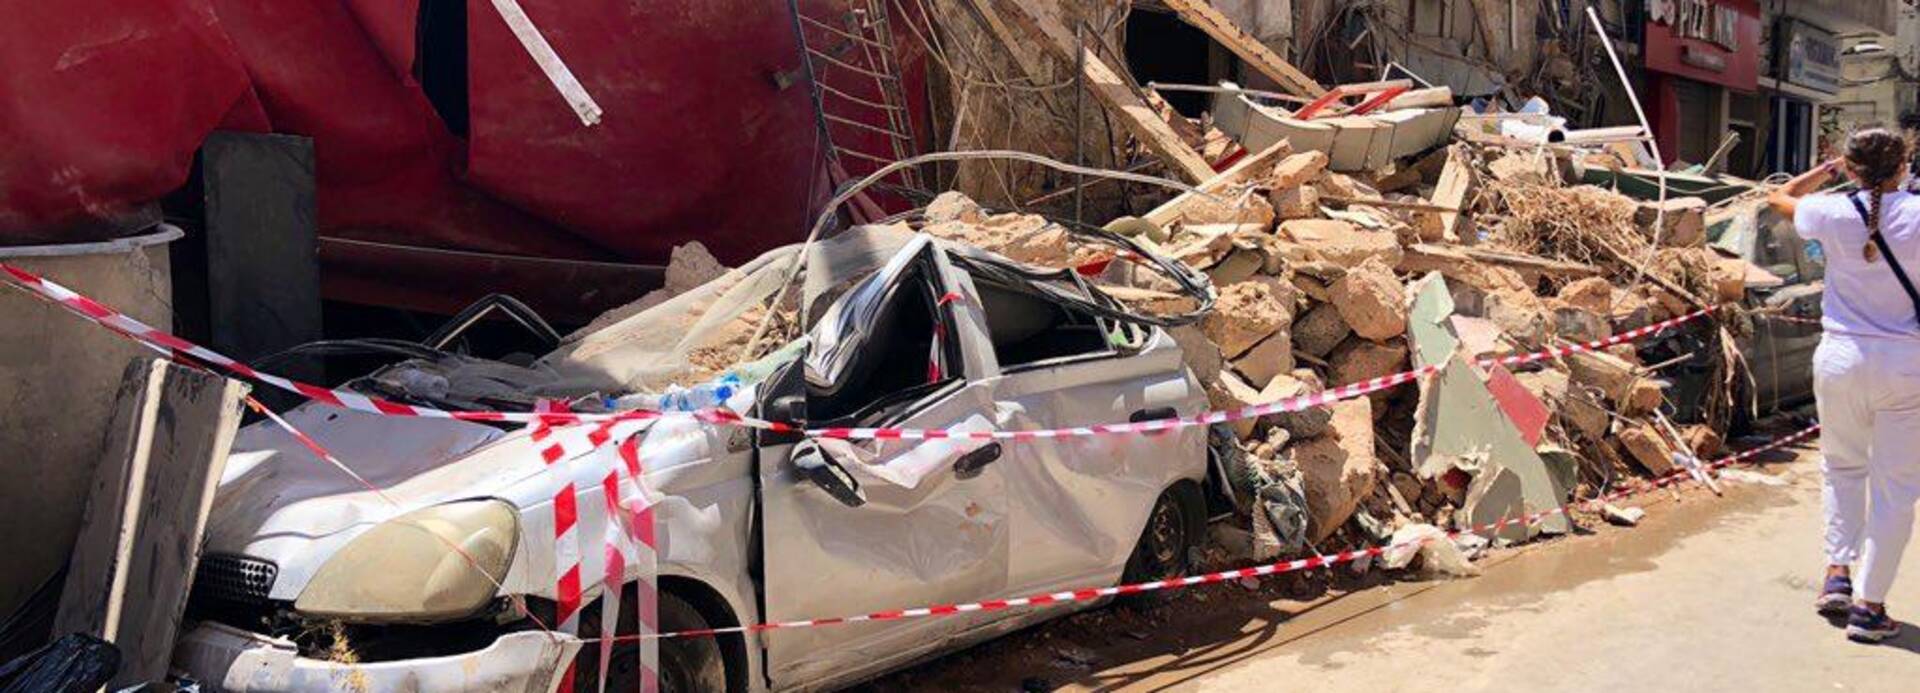 Trümmer in Beirut nach Explosion